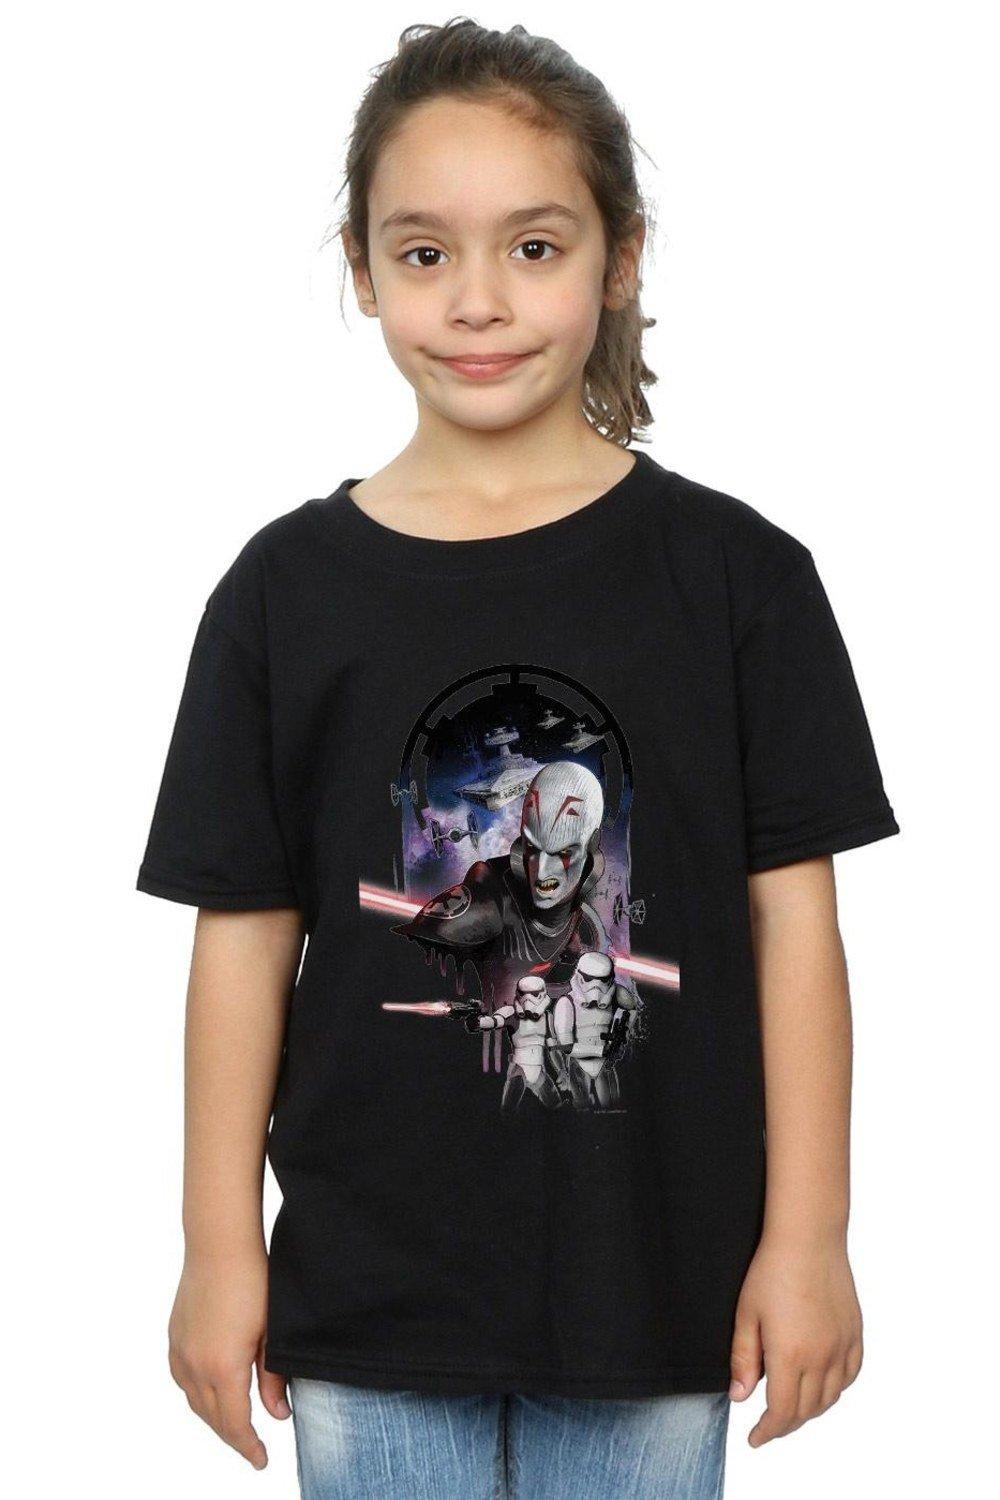 Хлопковая футболка Rebels The Grand Inquisitor Star Wars, черный хлопковая футболка rebels hera star wars черный